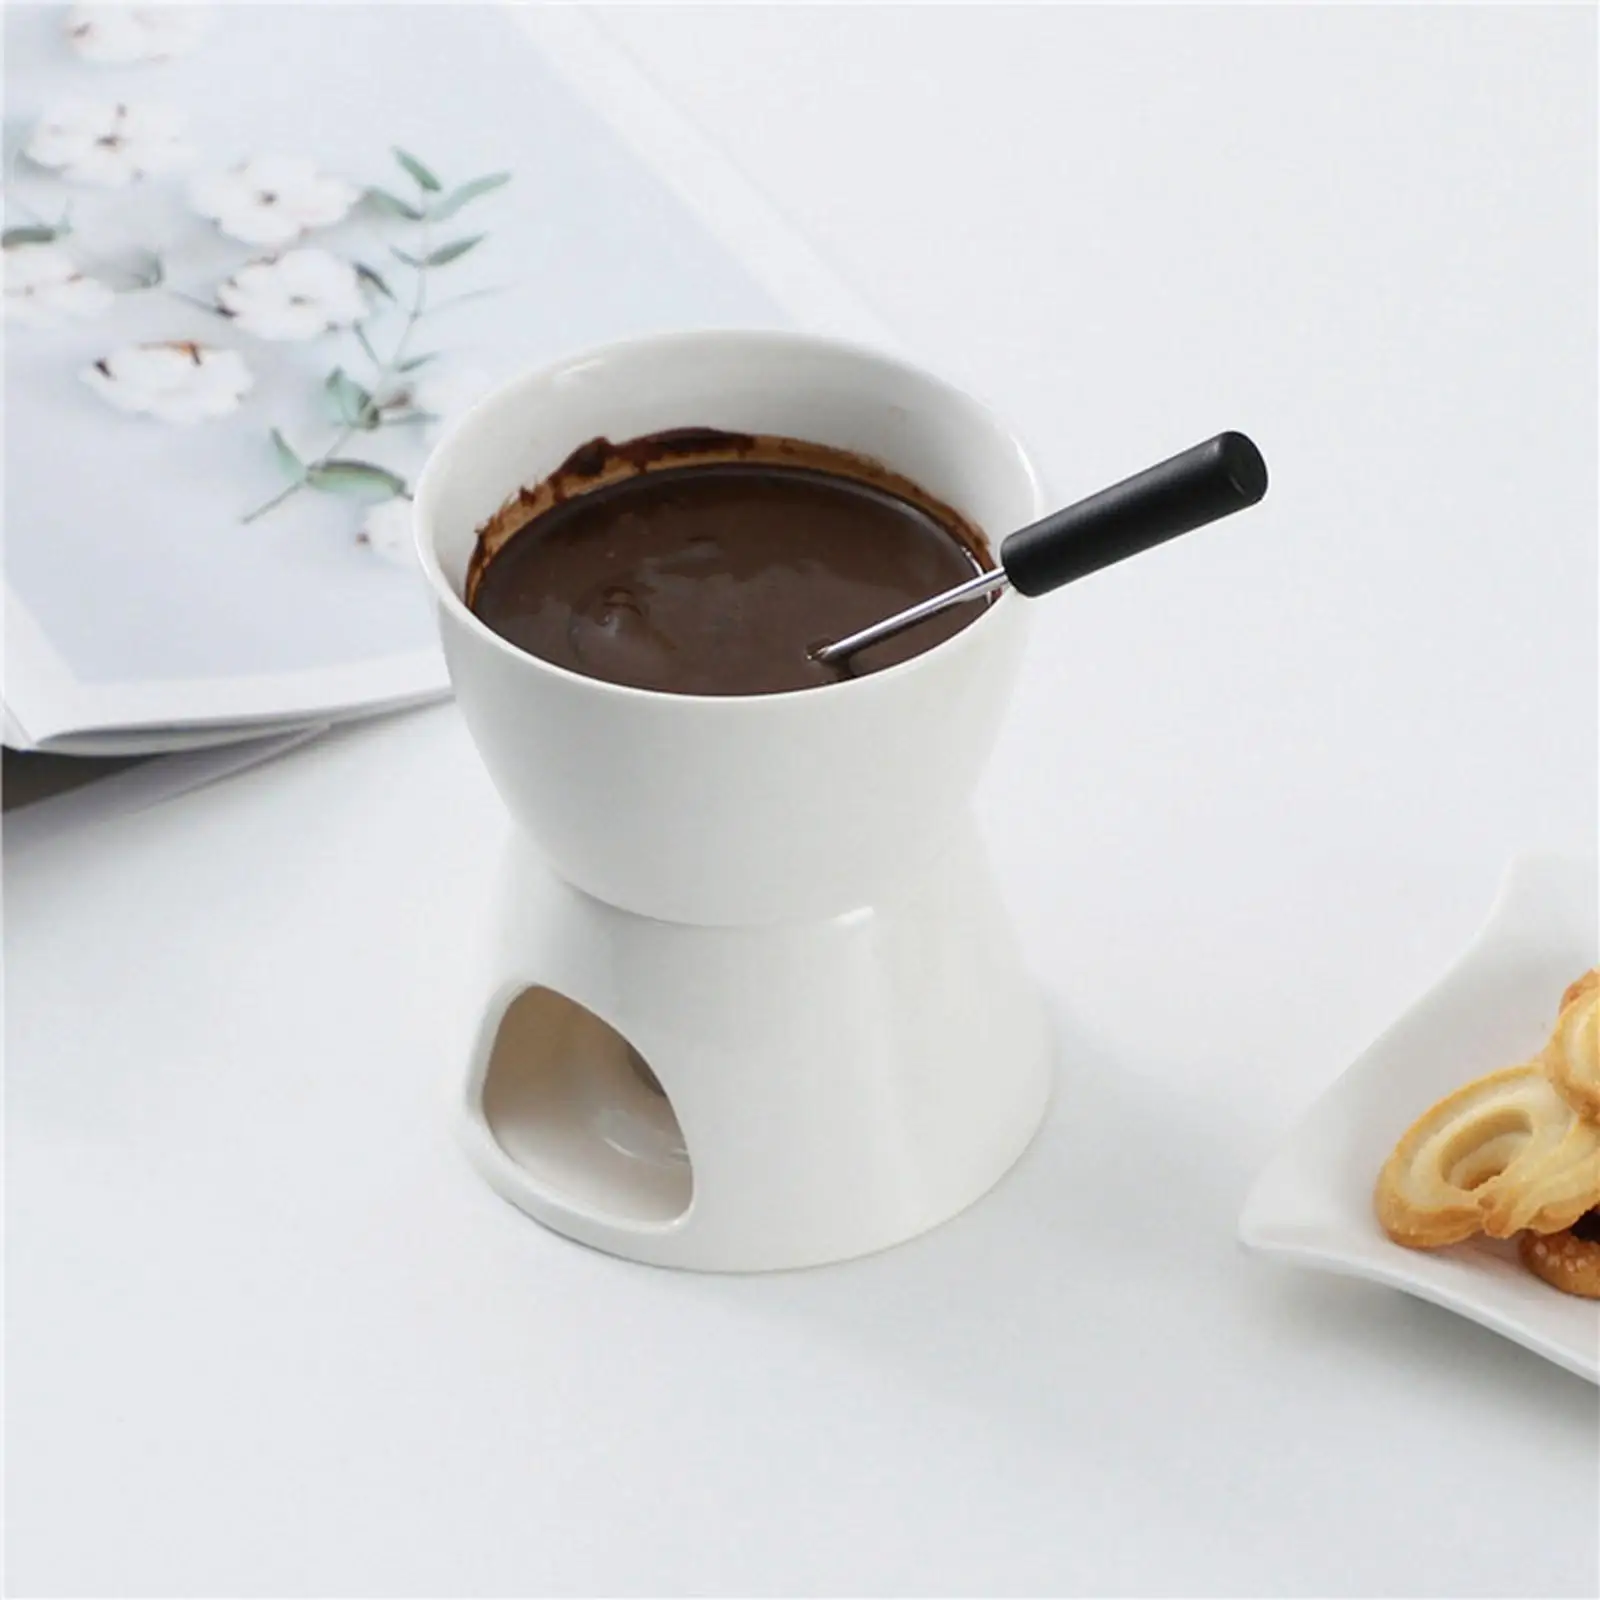 Chocolate Fondue Pot Butter Heater Ceramic Hot Pot Tea Light Porcelain Melting Pot for Broth Dessert Party Dinner Caramel